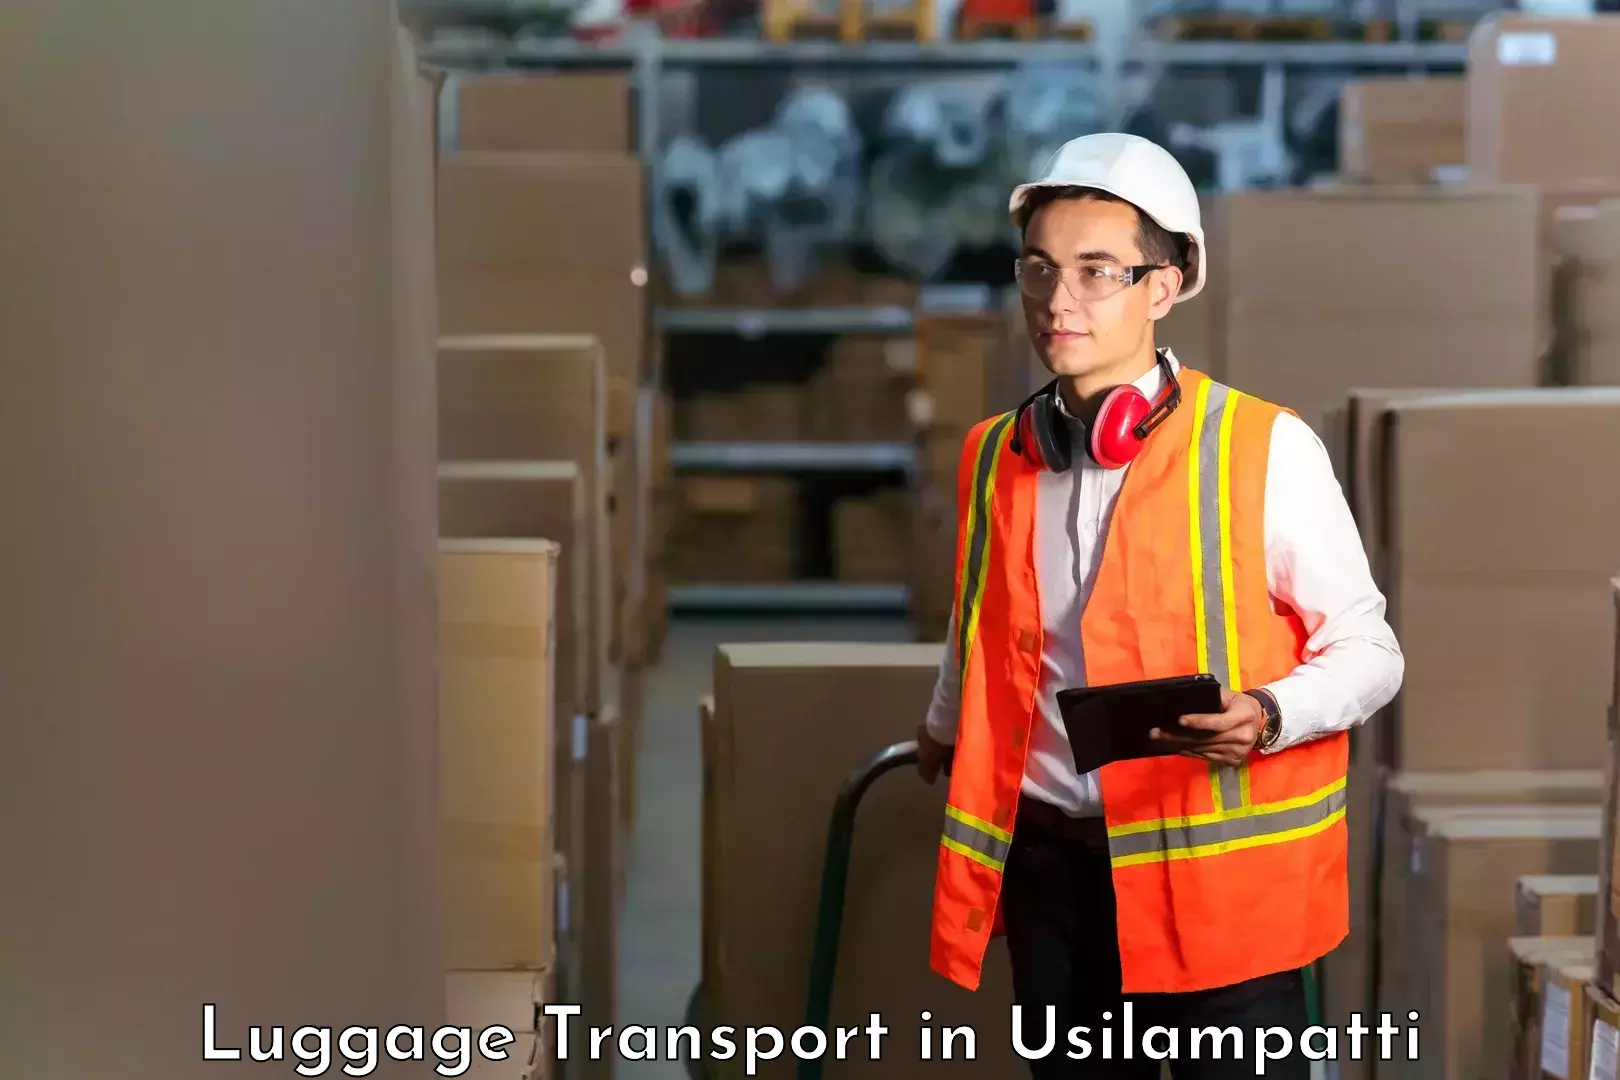 Luggage shipment processing in Usilampatti